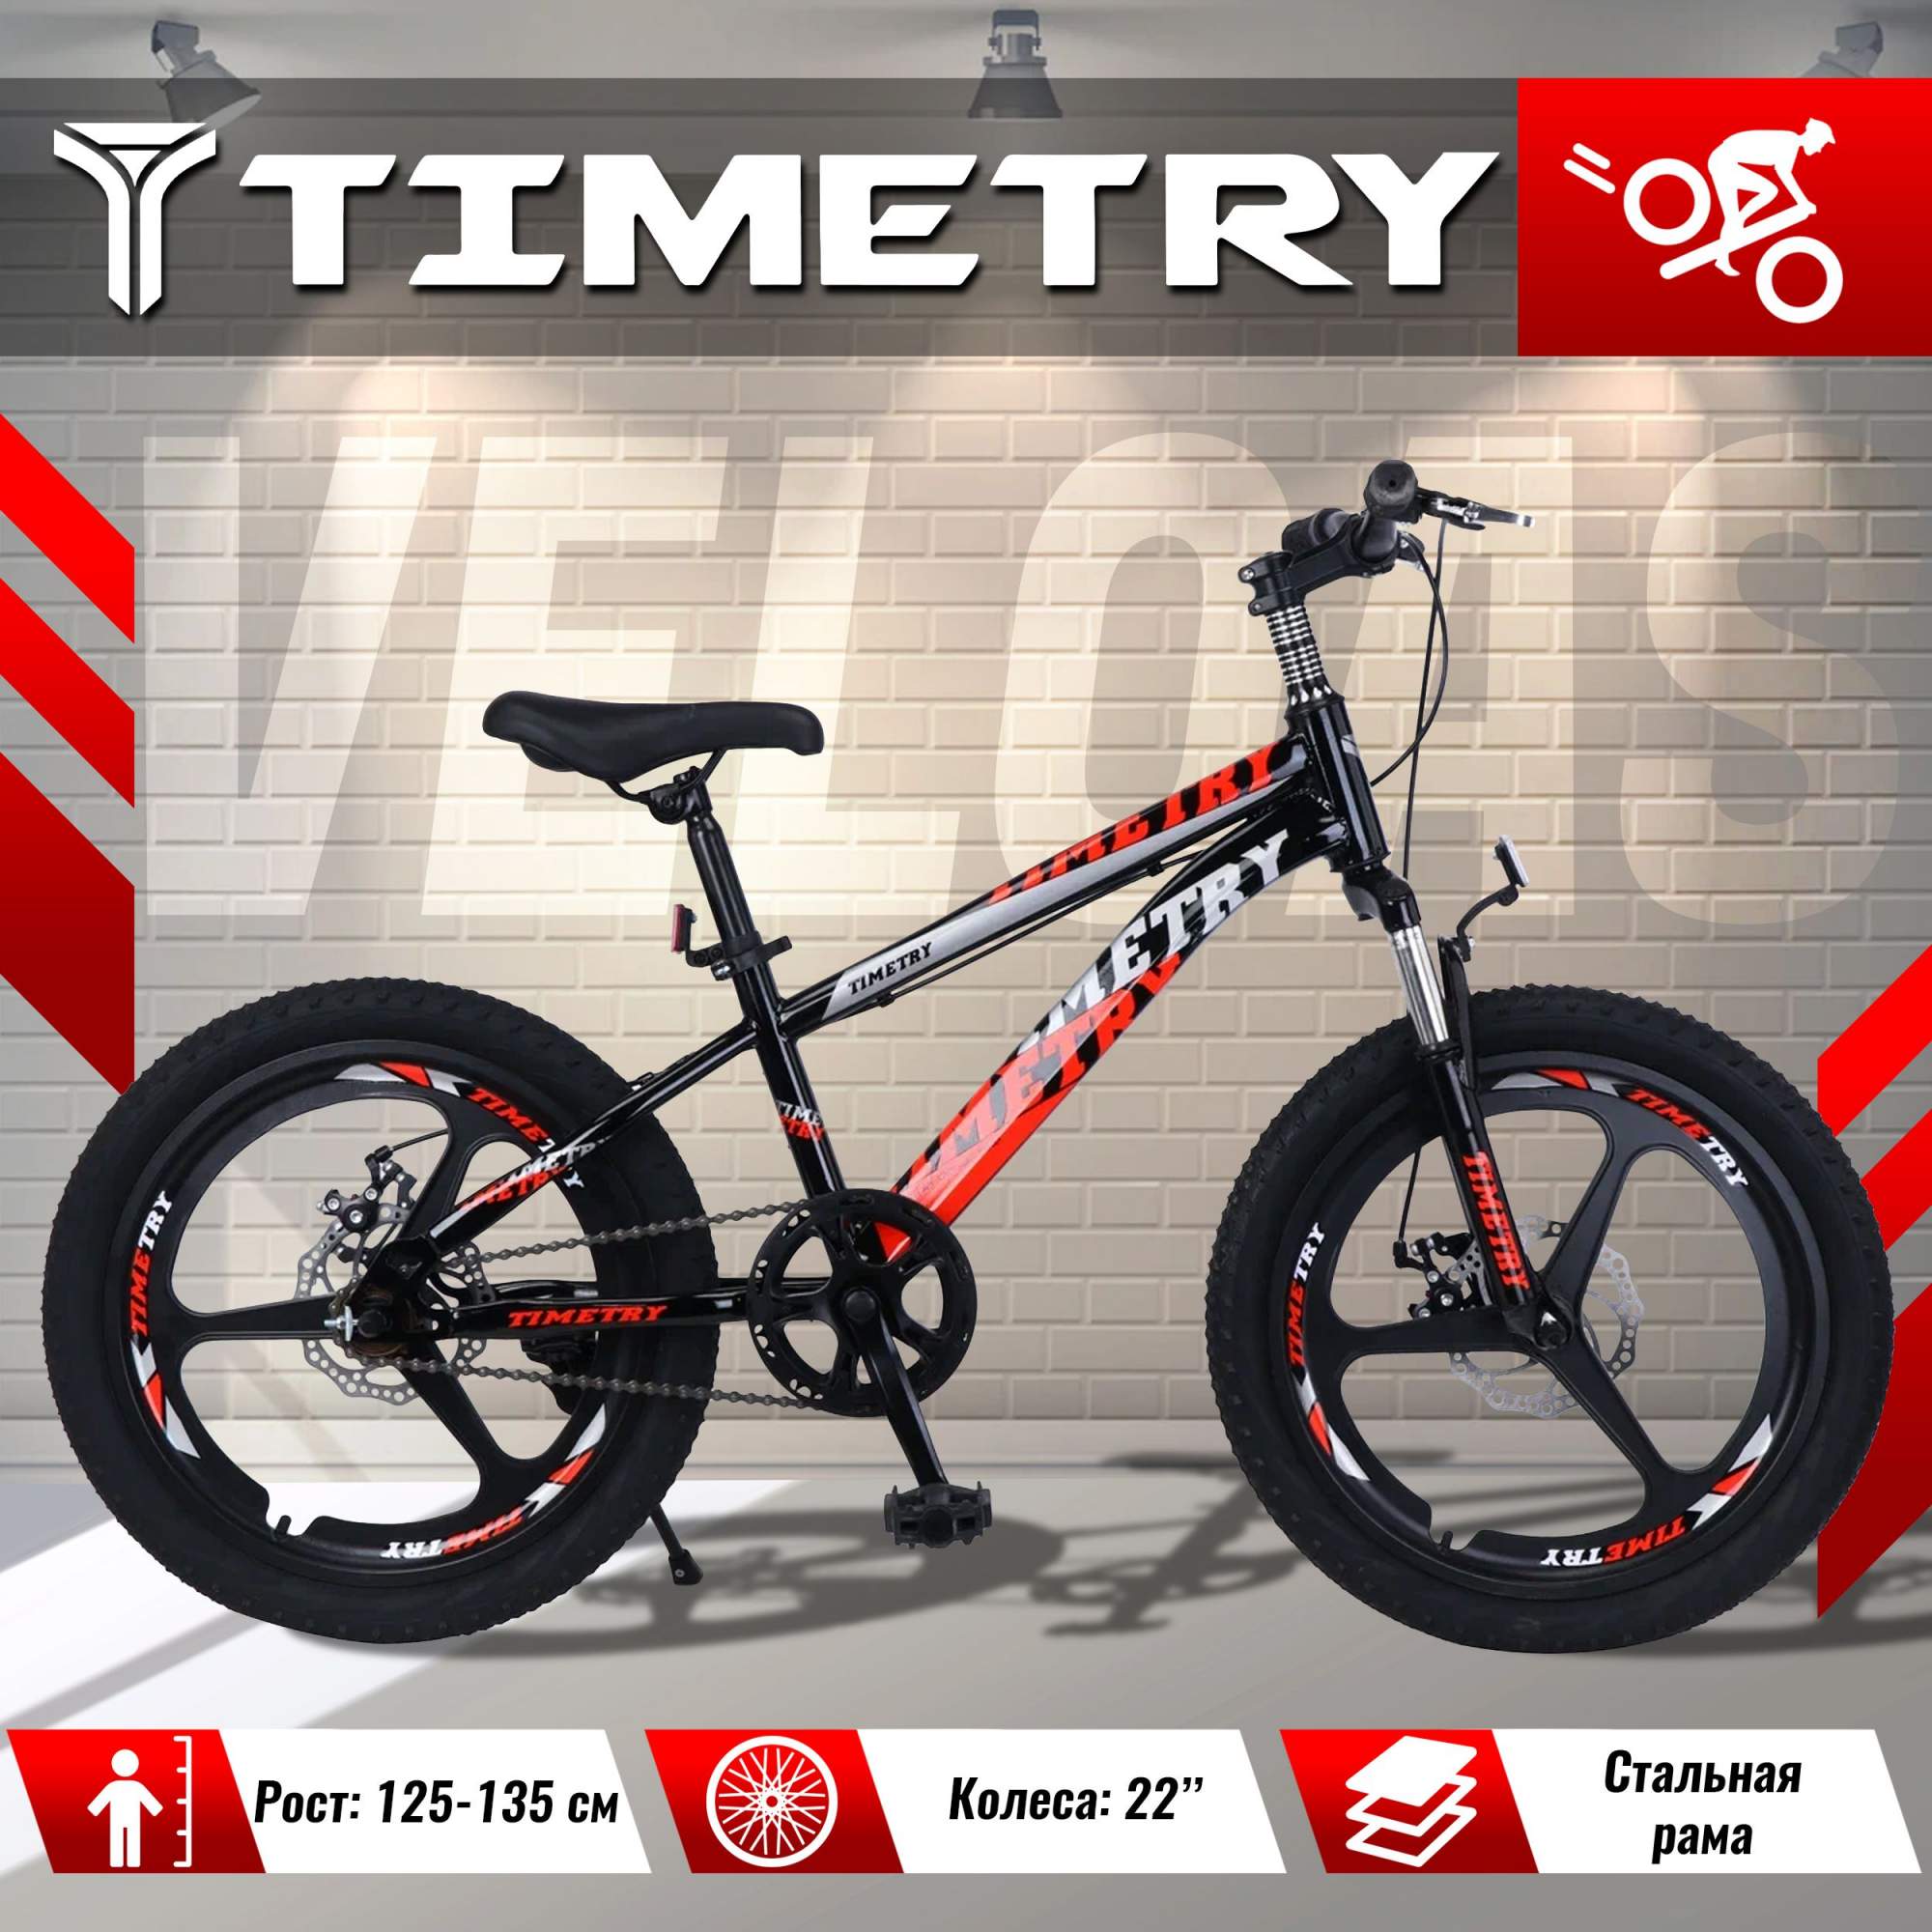 Купить велосипед детский TimeTry TT5012 22 дюйма черно-красный, цены на Мегамаркет | Артикул: 600016305413